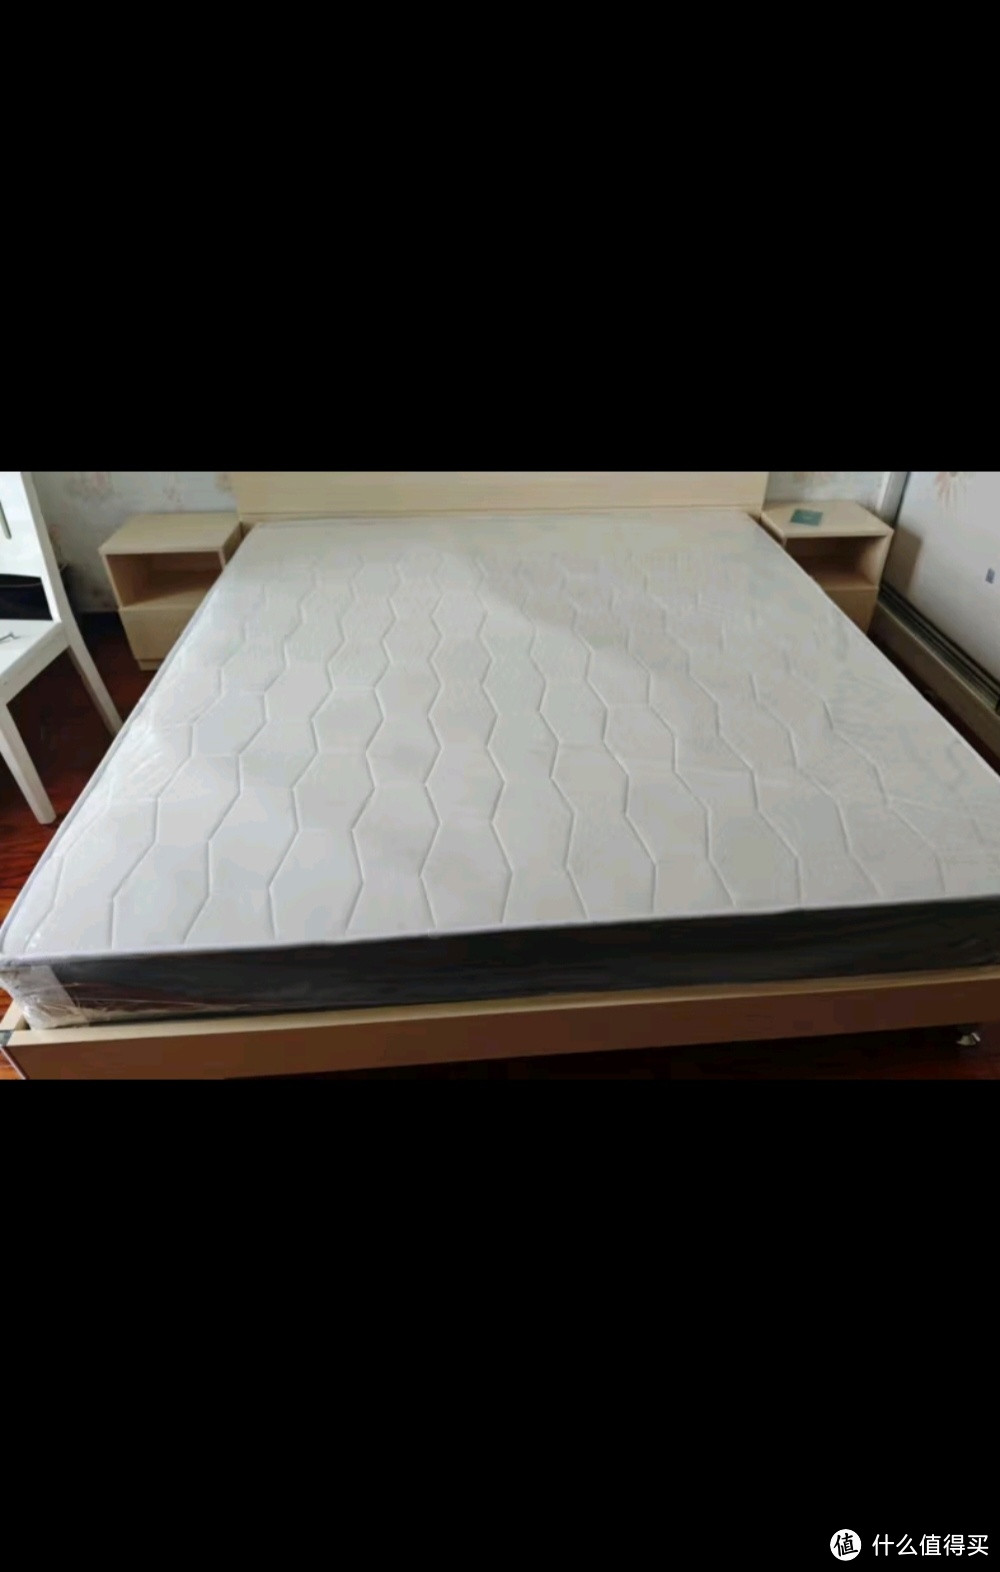 慕胜维格 弹簧床垫1.8x2米席梦思床垫椰棕乳胶床垫子1.5x2米护脊加厚床垫 【推荐款】20经典+针织